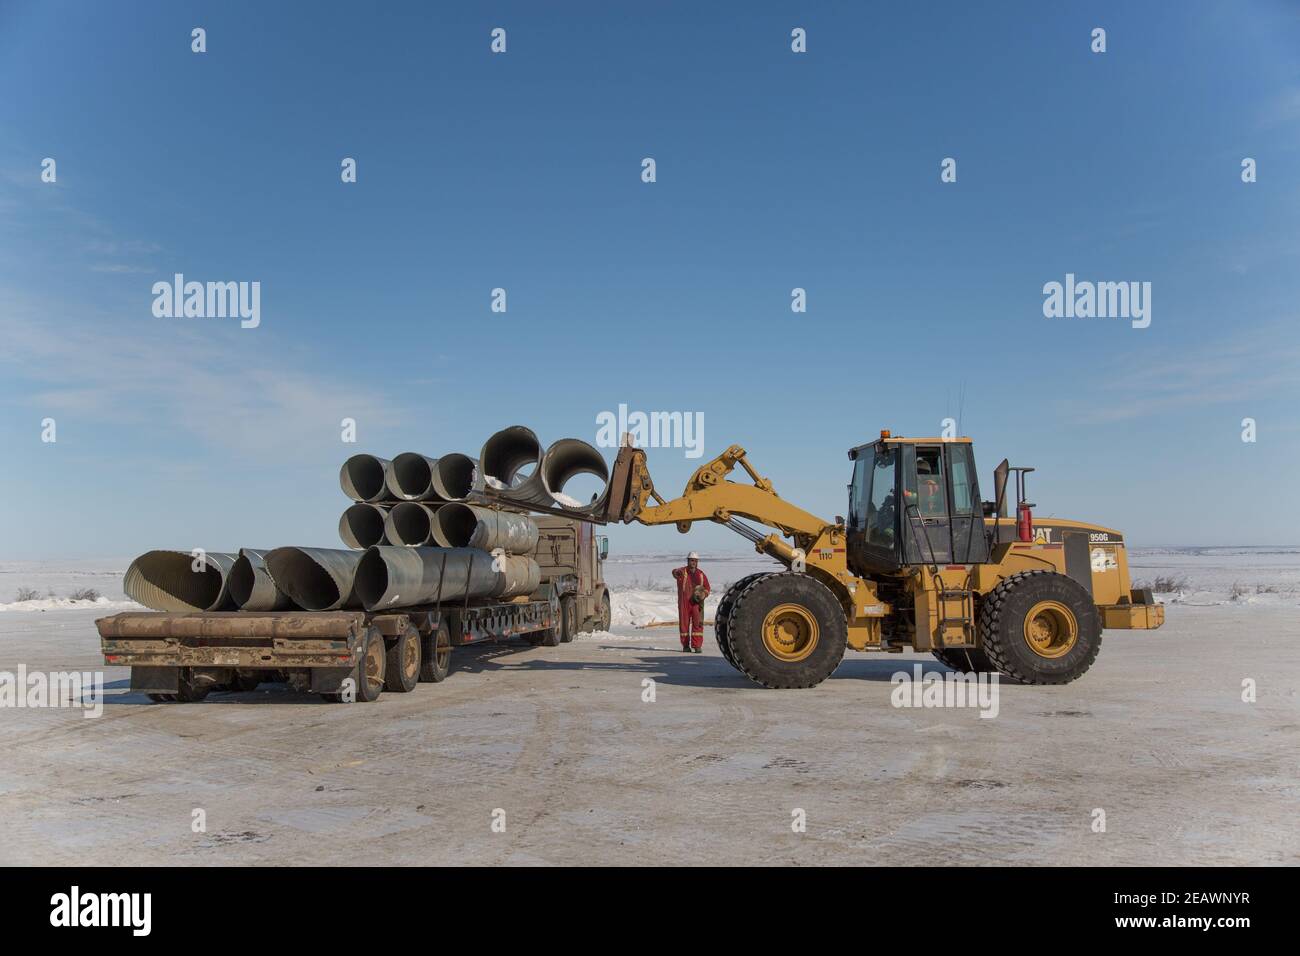 Tuyaux de ponceau de chargement de chargeuses sur pneus pour la construction de la route Inuvik-Tuktoyaktuk, Territoires du Nord-Ouest, Arctique canadien. Banque D'Images